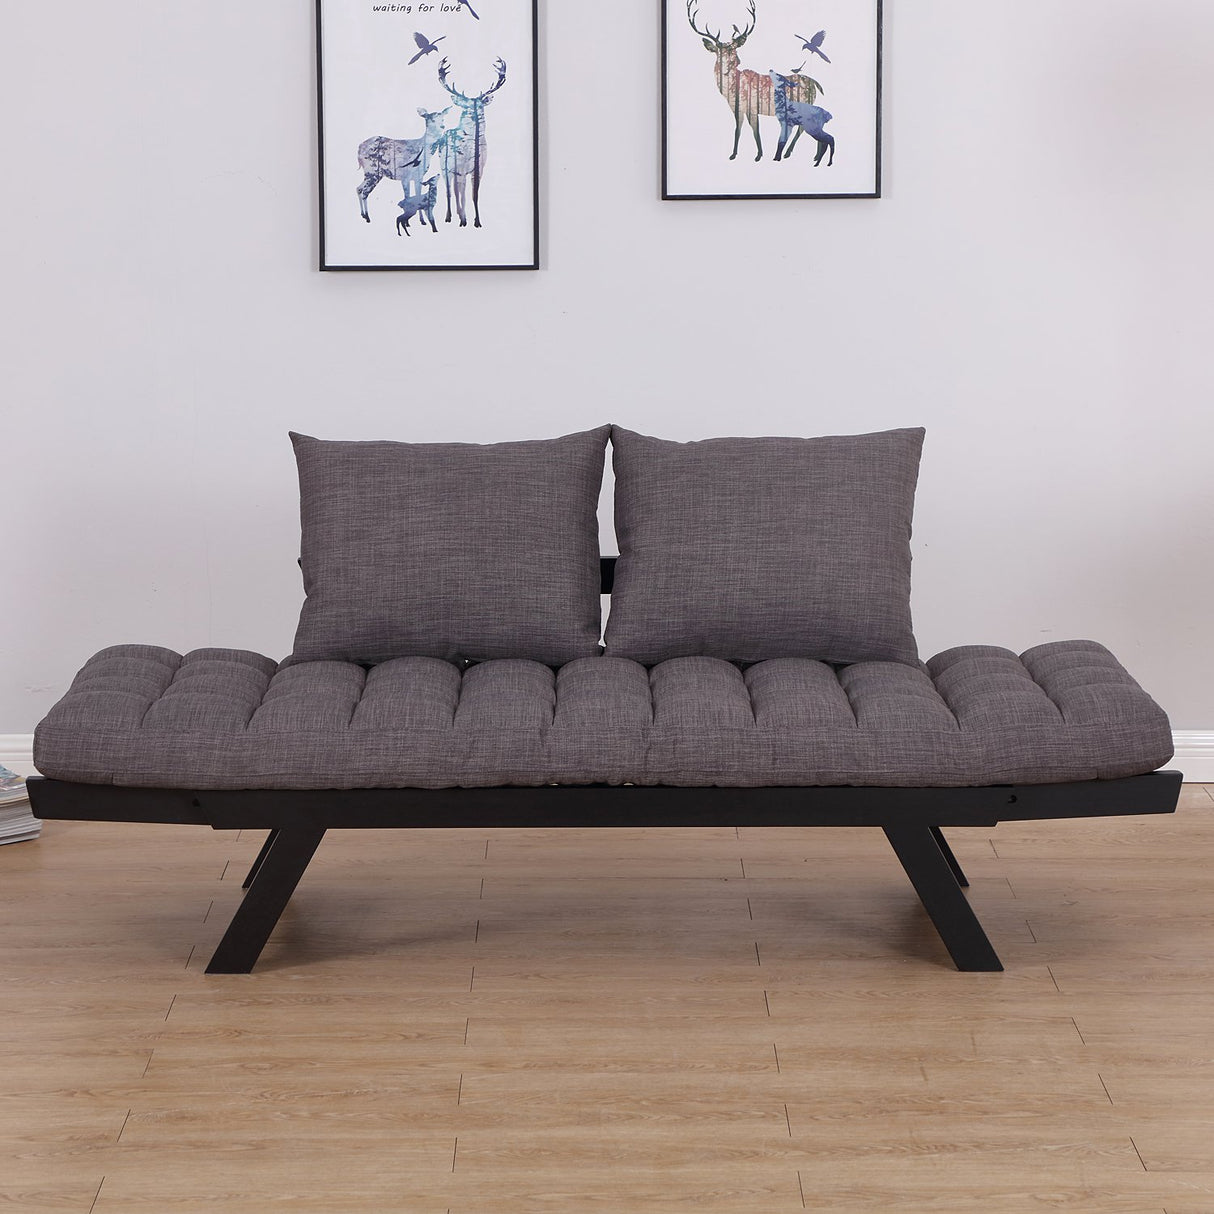 immagine-6-easycomfort-easycomfort-divano-letto-2-posti-con-3-posizioni-regolabili-nero-e-grigio-in-lino-e-rovere-elegante-ean-8055776915333